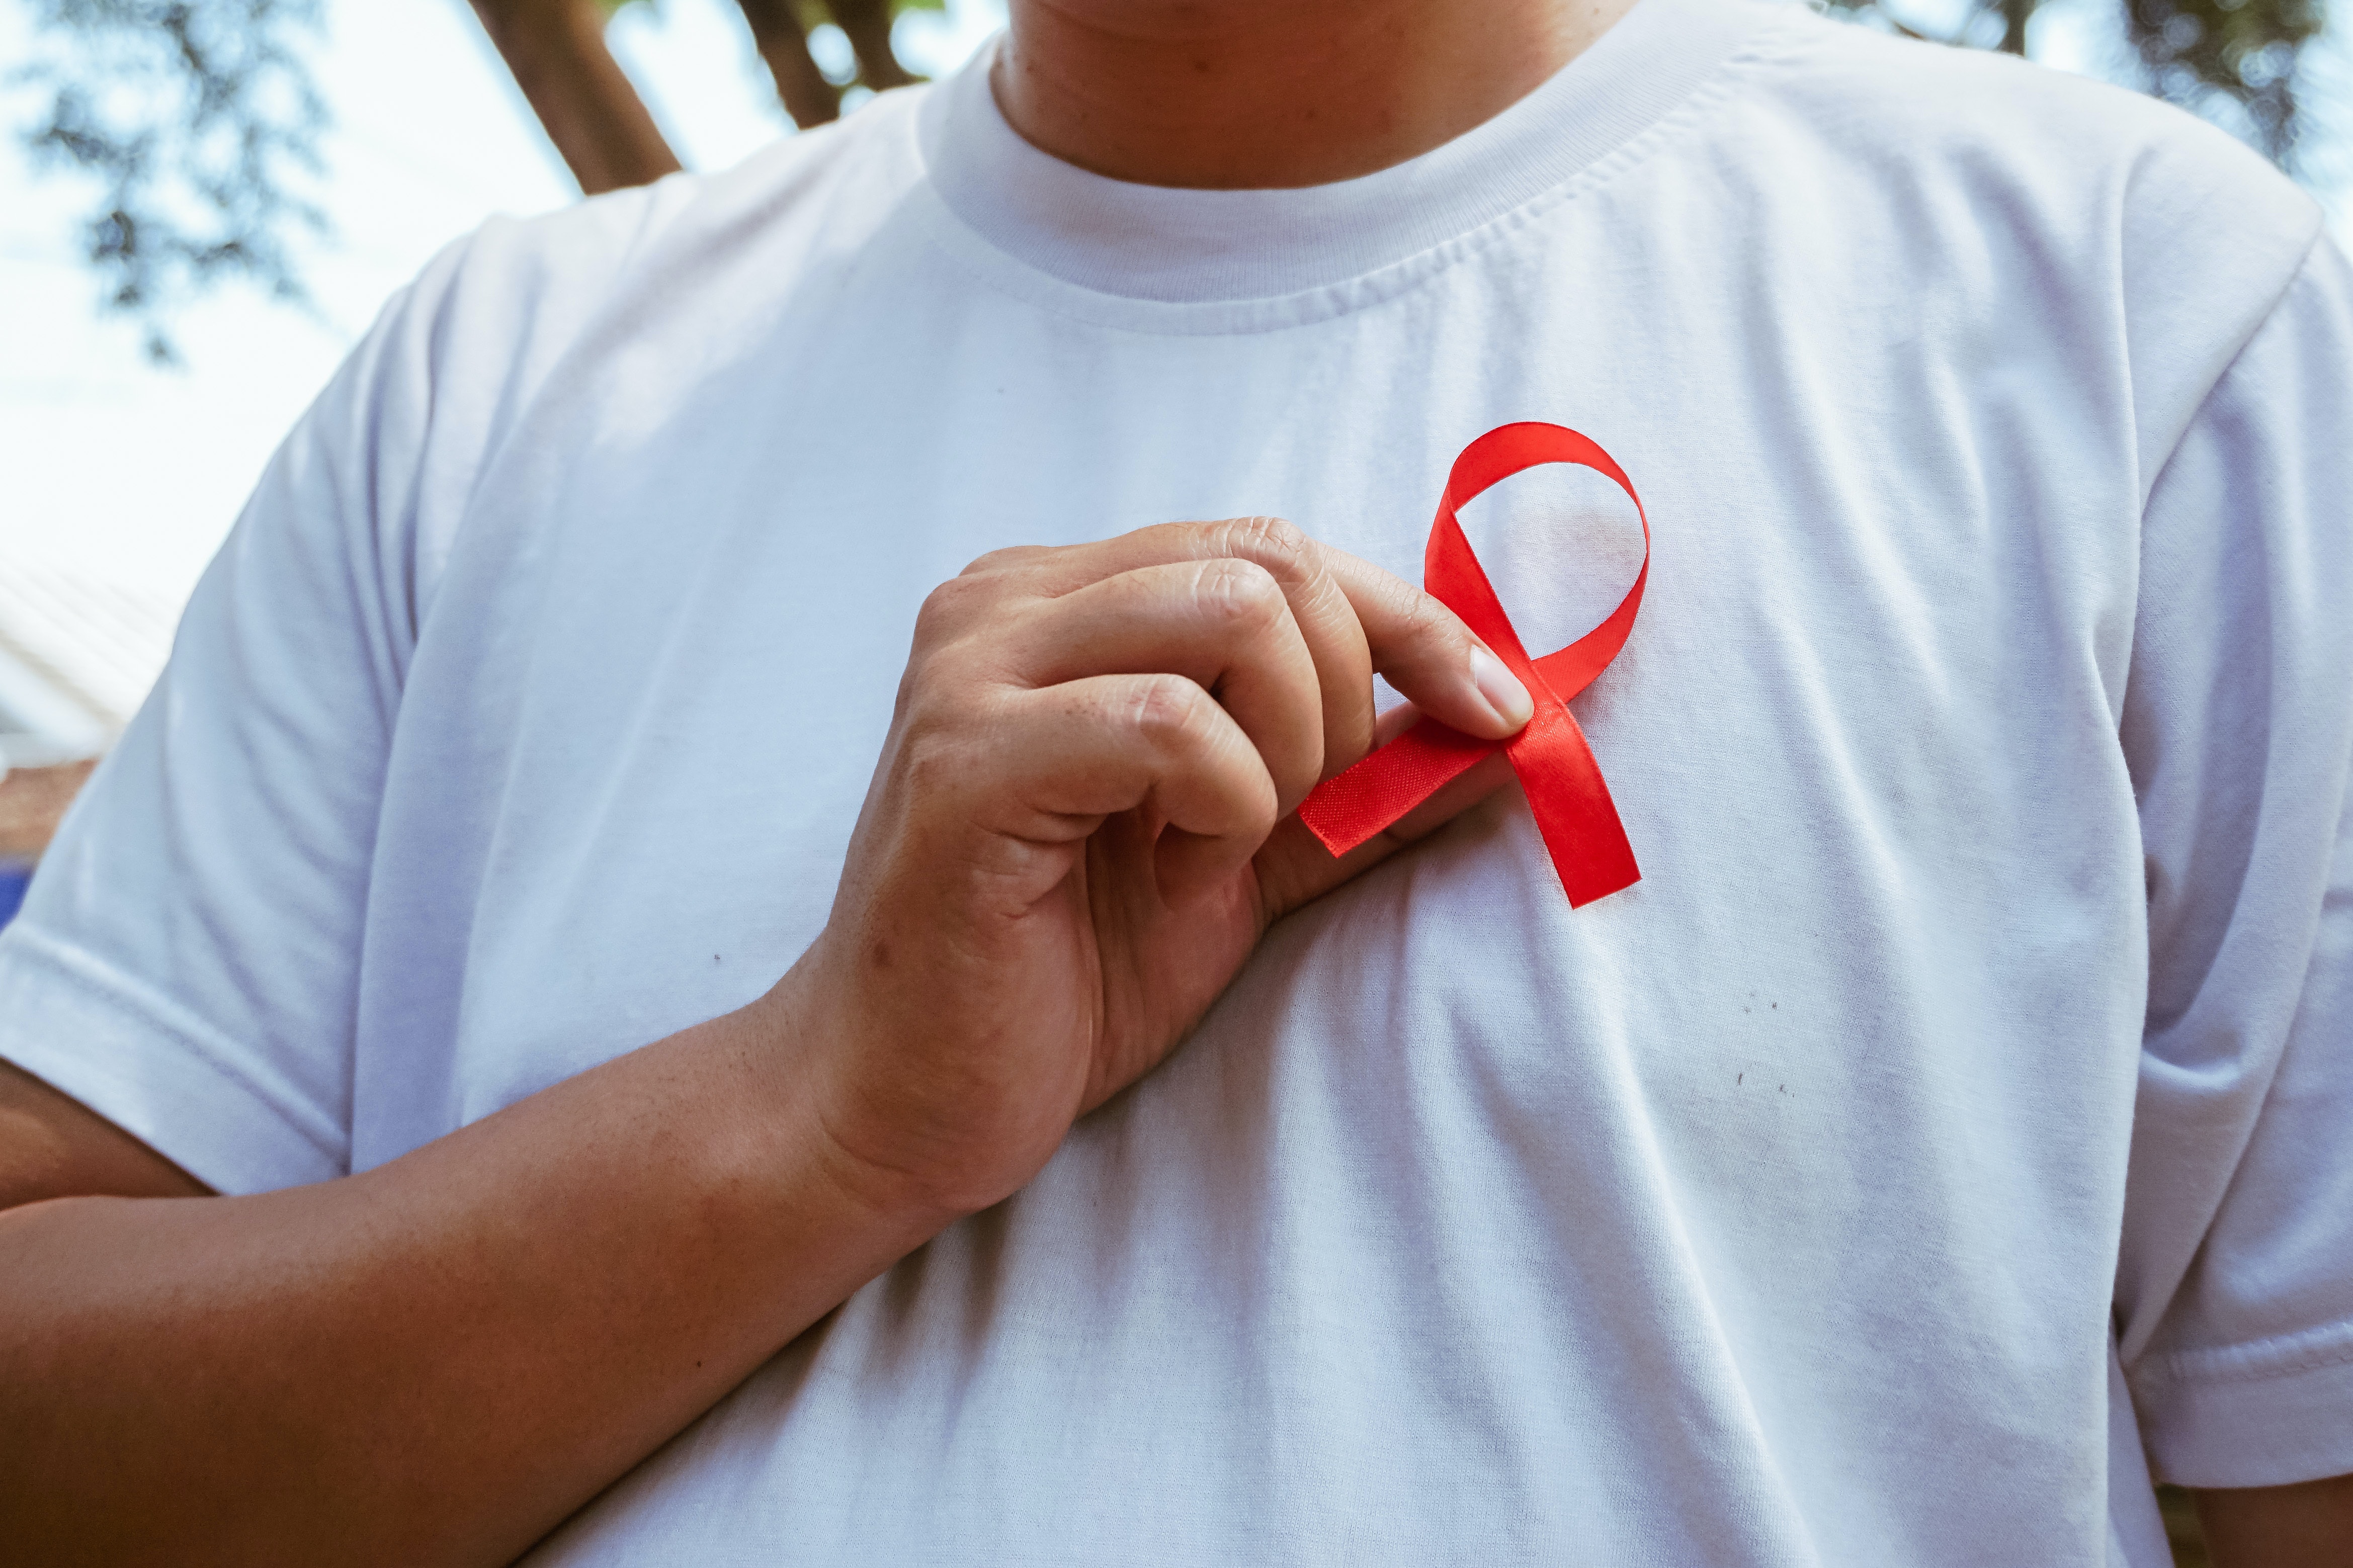 Un nou tratament revoluționar pentru HIV tocmai a fost aprobat în Marea Britanie